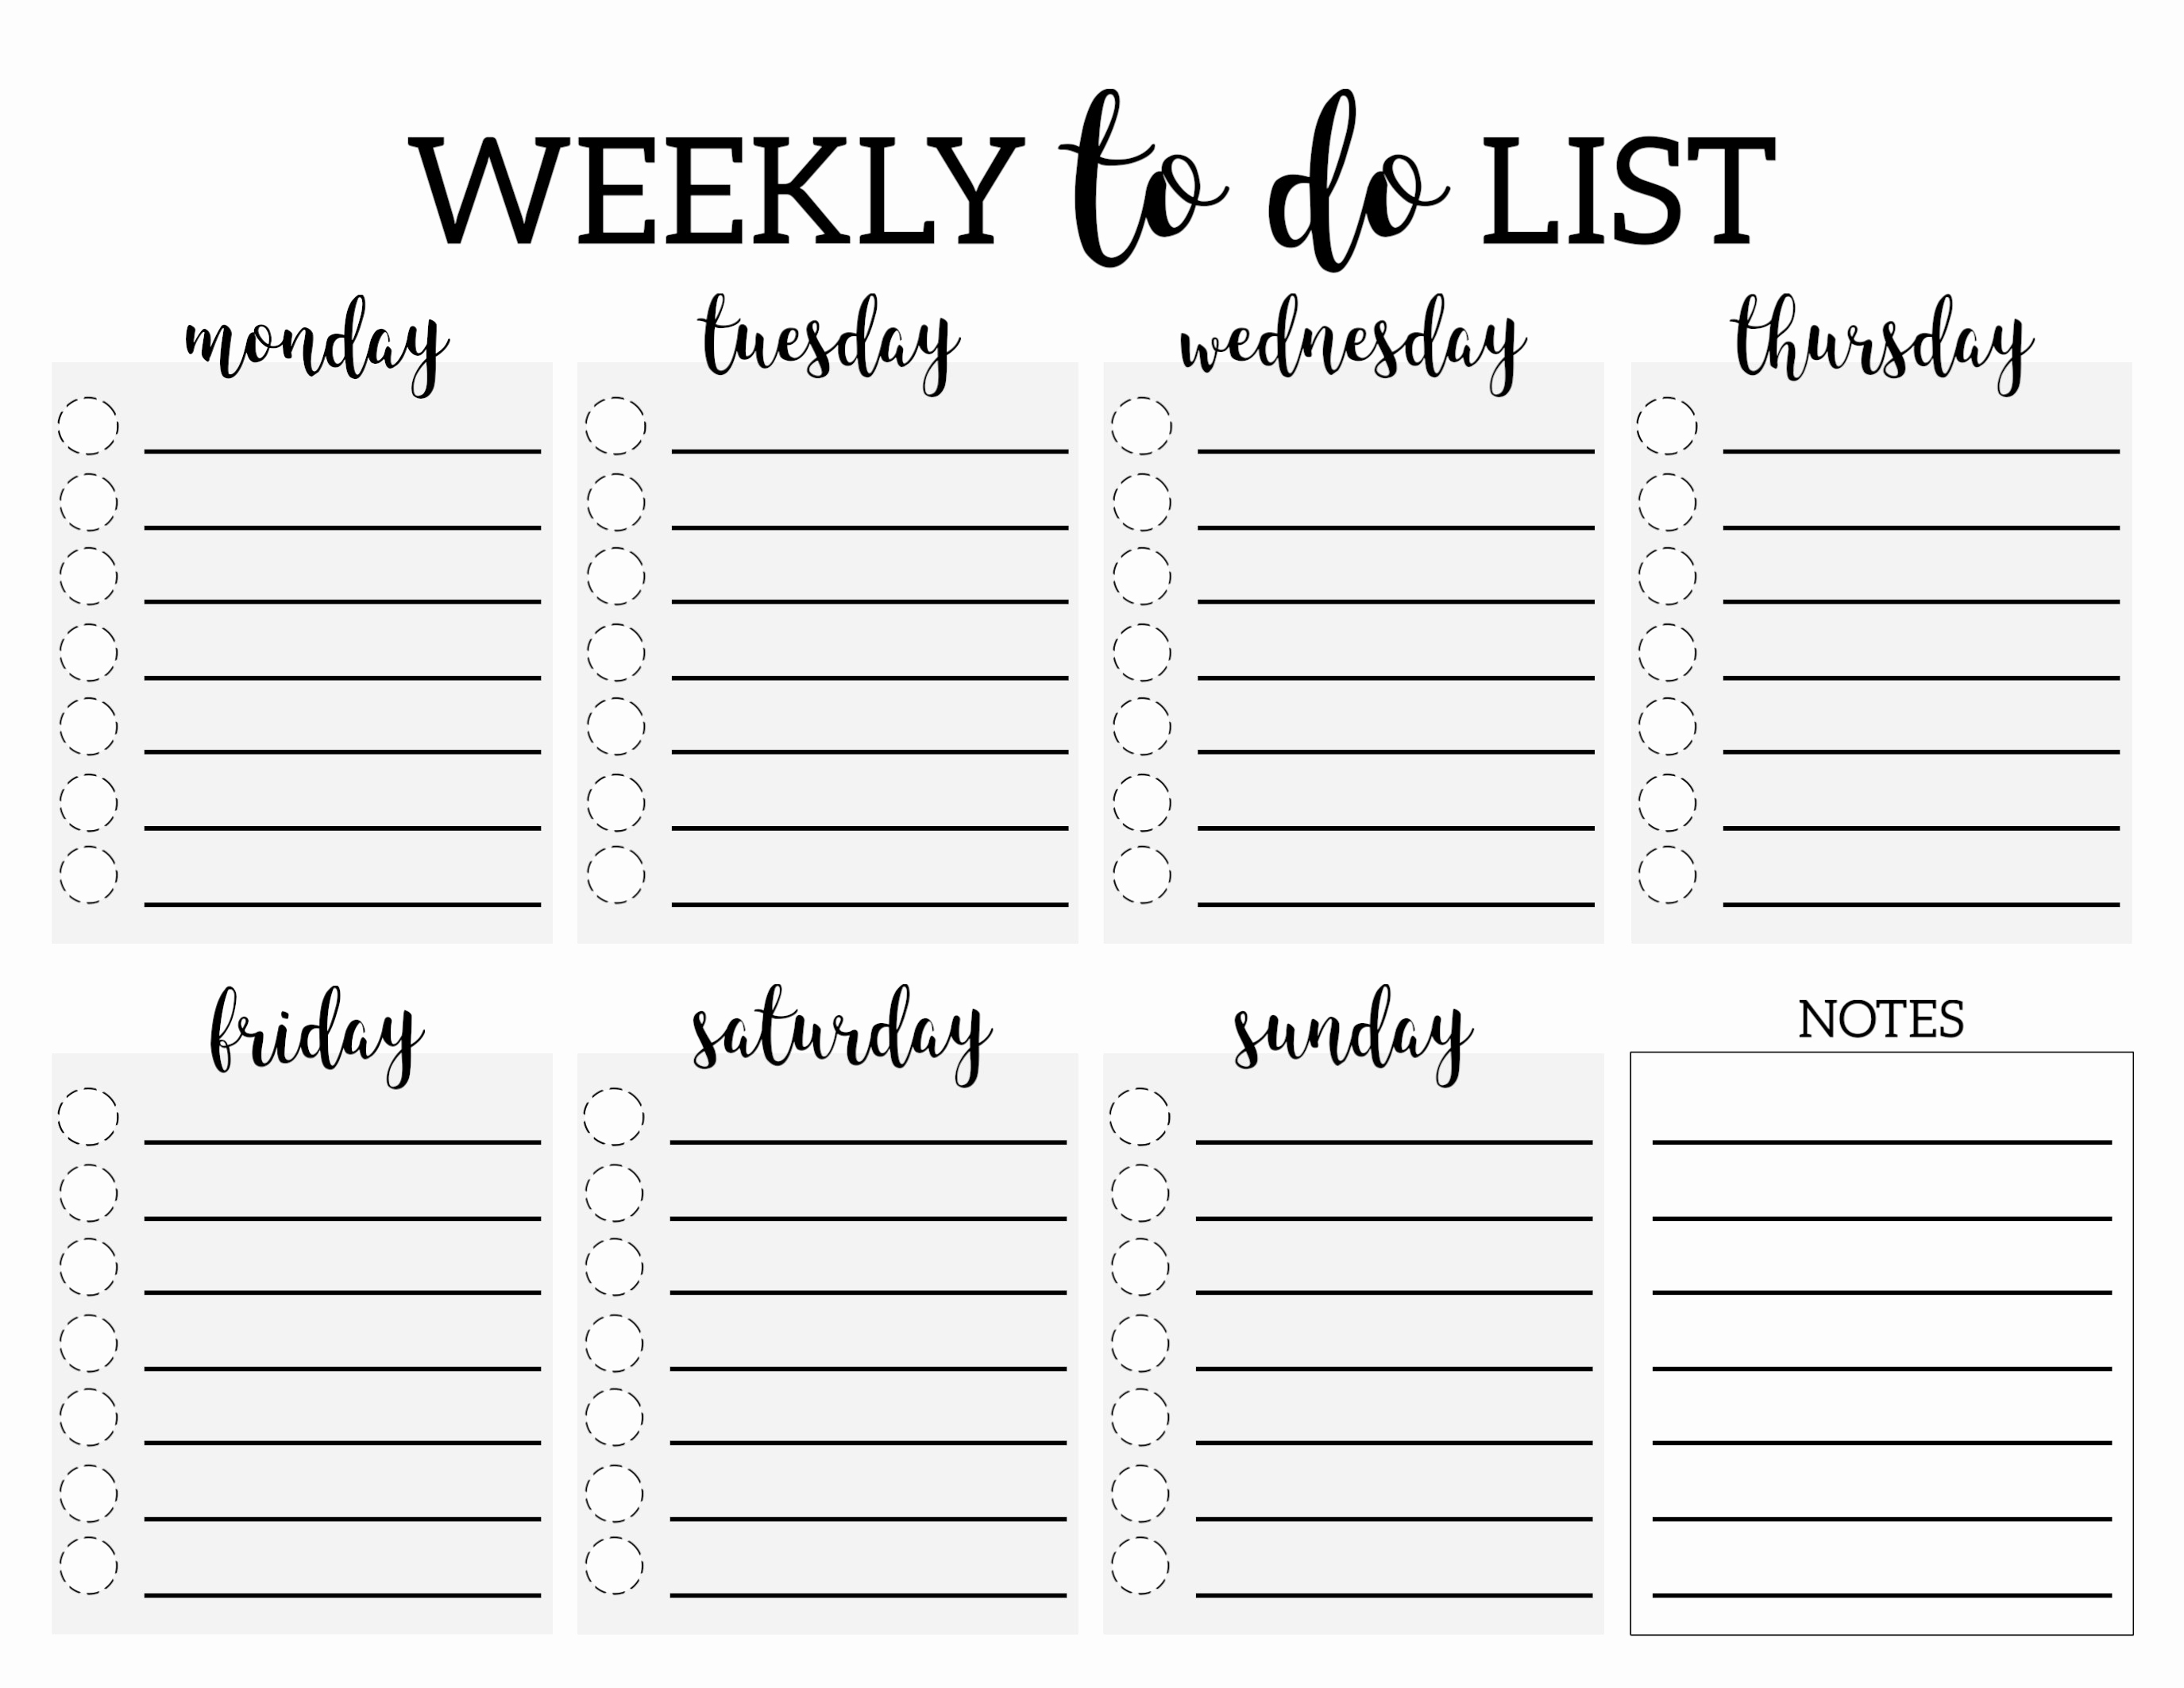 Printable Weekly Planner Template Beautiful Weekly to Do List Printable Checklist Template Paper